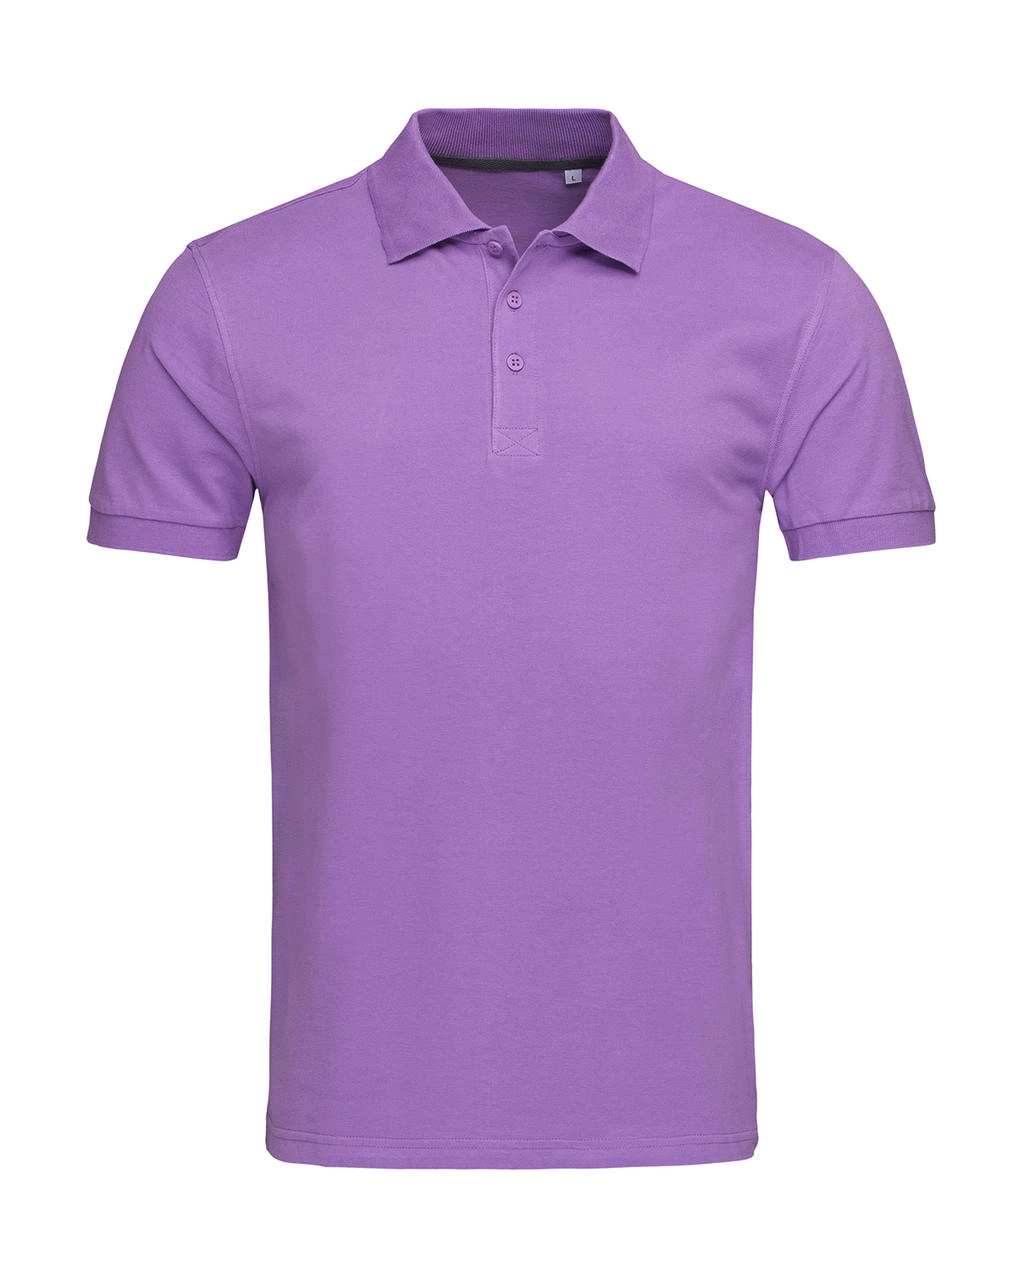 Harper Polo zum Besticken und Bedrucken in der Farbe Lavender Purple mit Ihren Logo, Schriftzug oder Motiv.